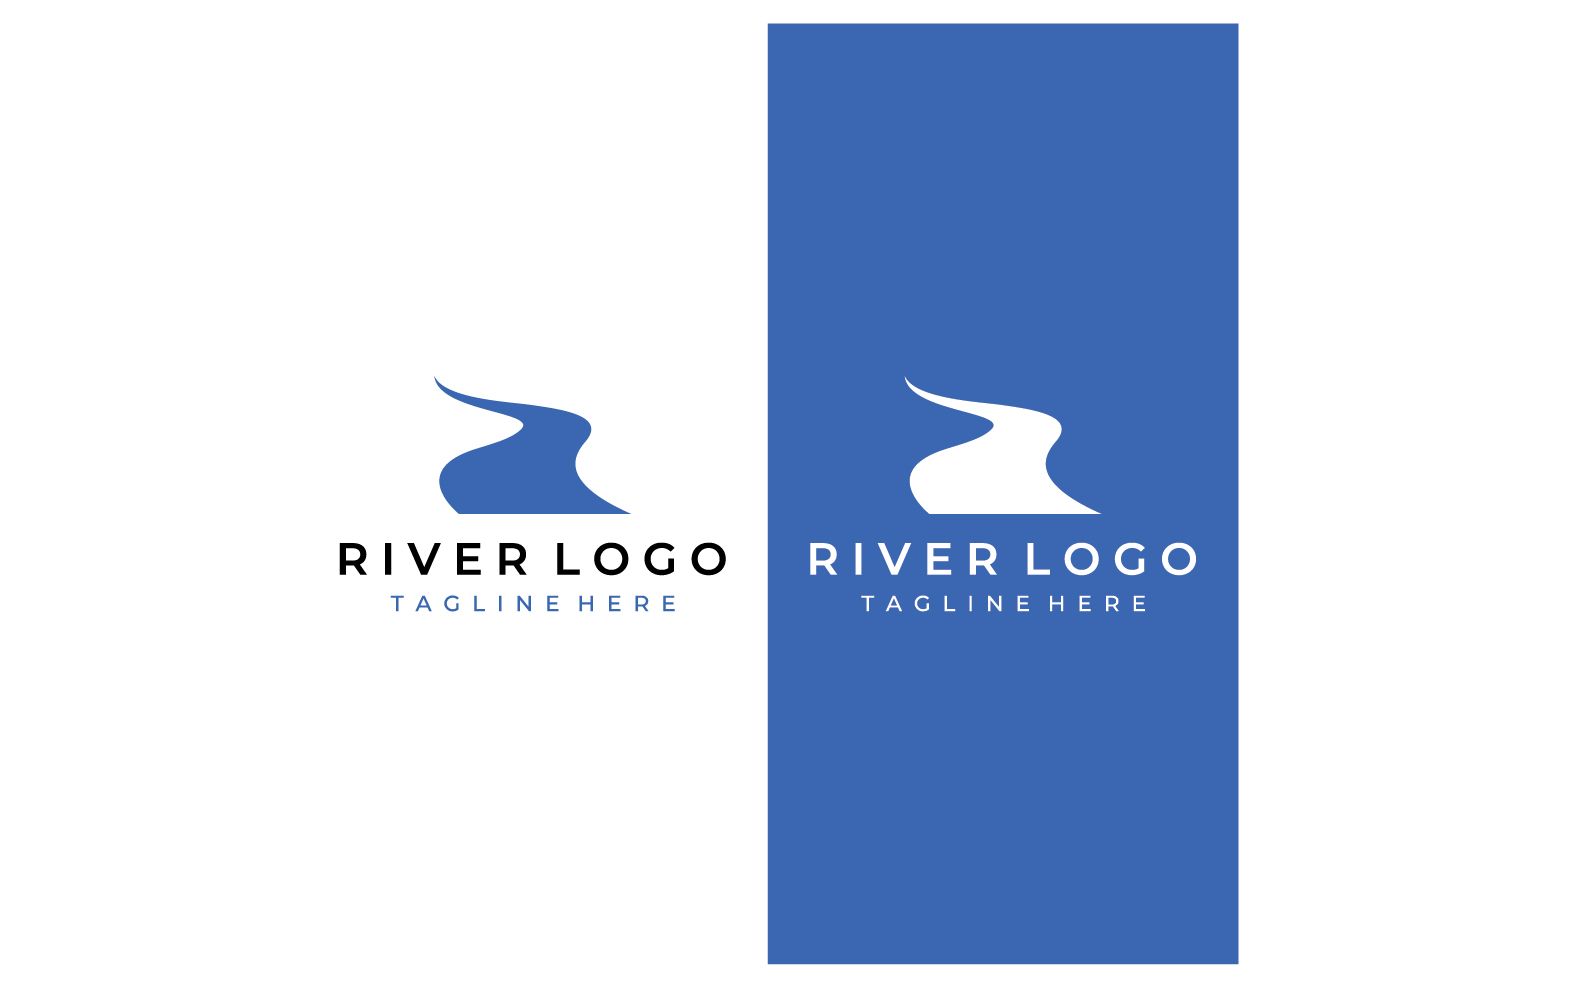 River nature logo and symbol vcetor 9